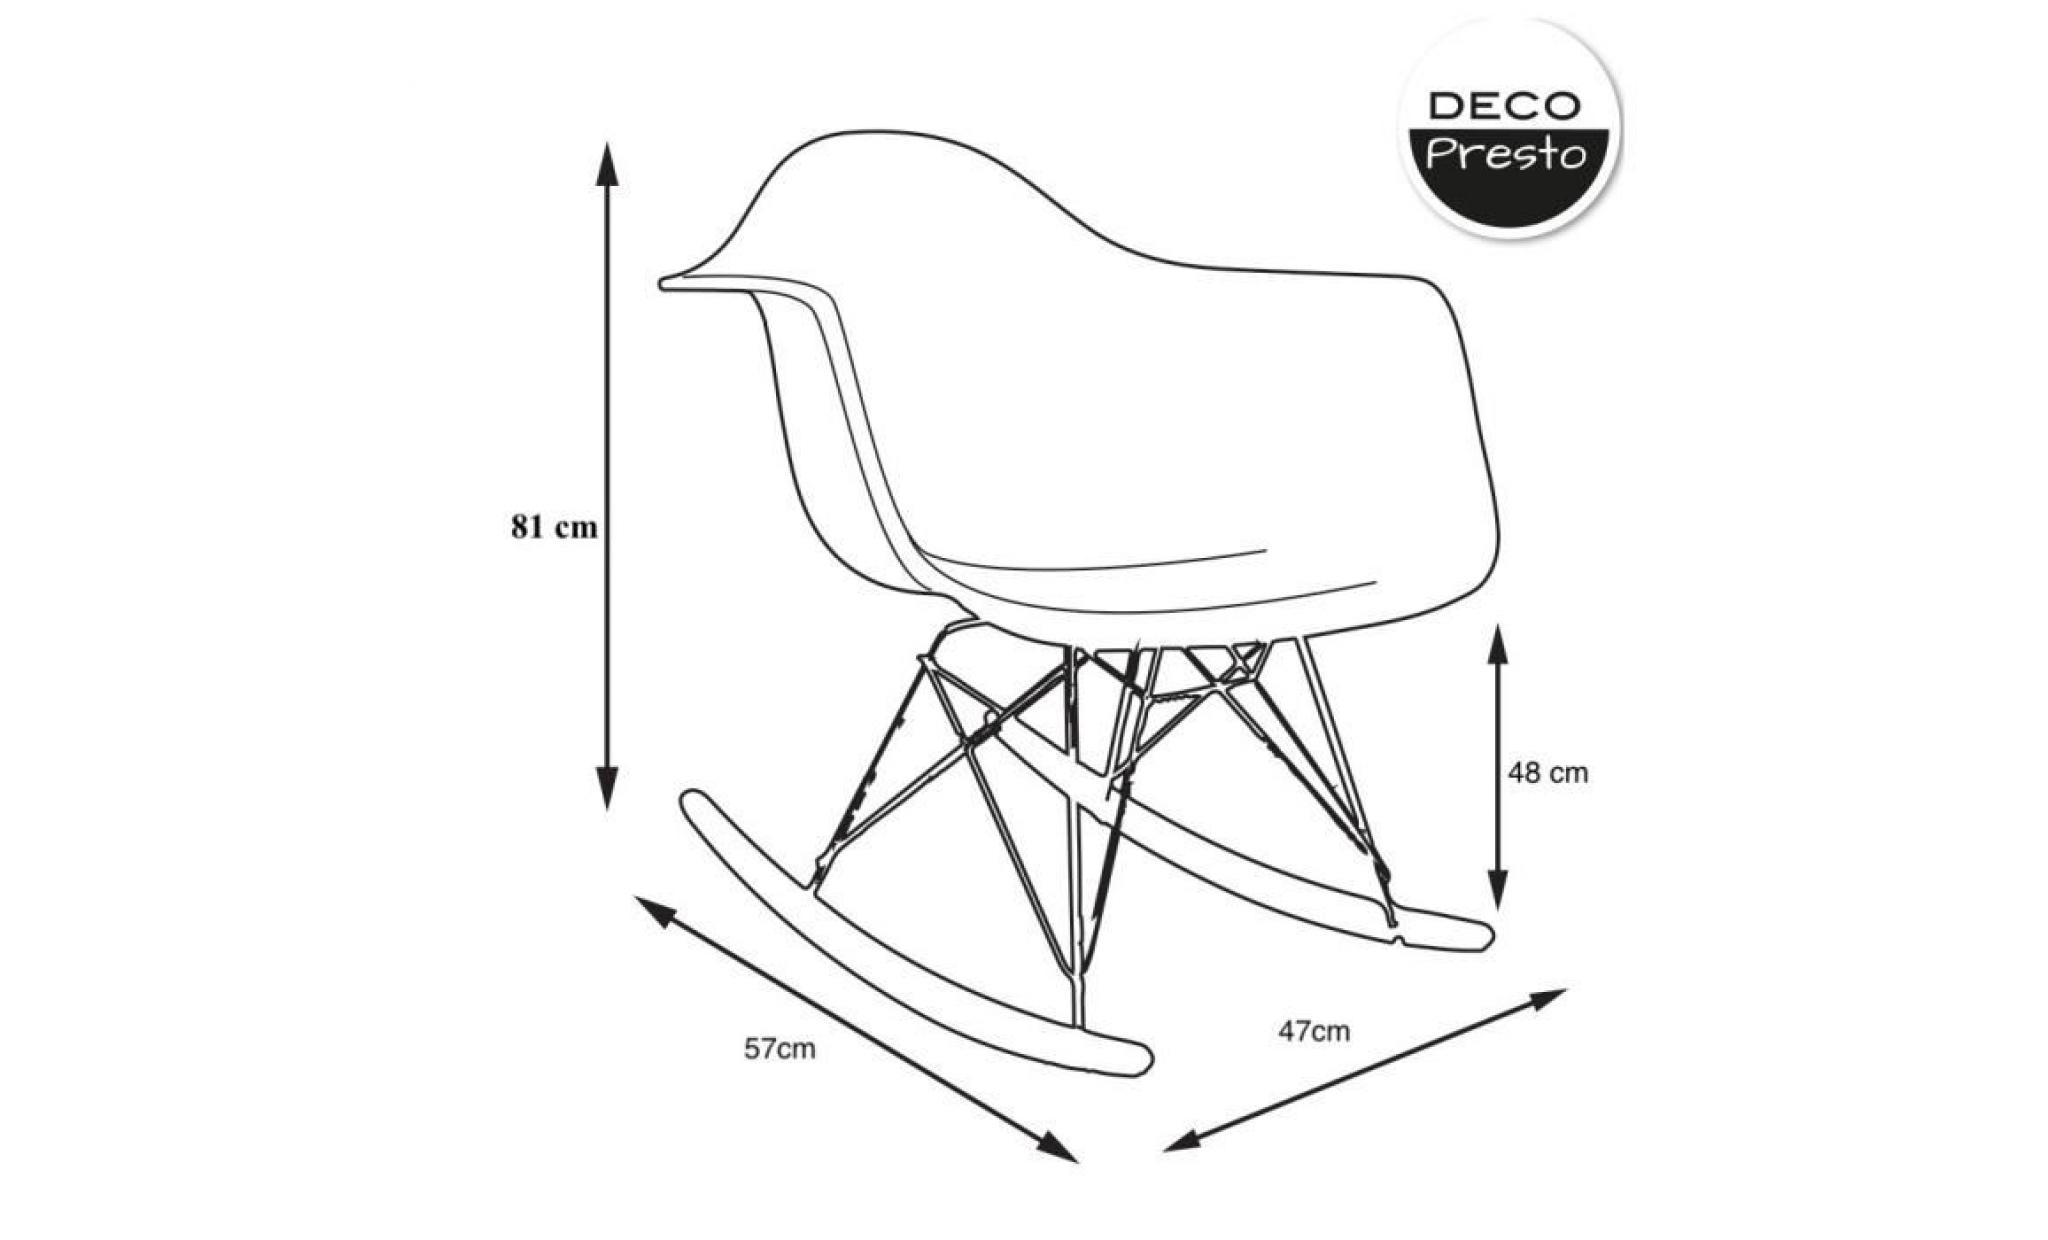 1 x fauteuil à bascule rocking chair eiffel haut. 48 cm patchwork noir blanc pieds: bois noir decopresto dp rarb48 pn 1 pas cher